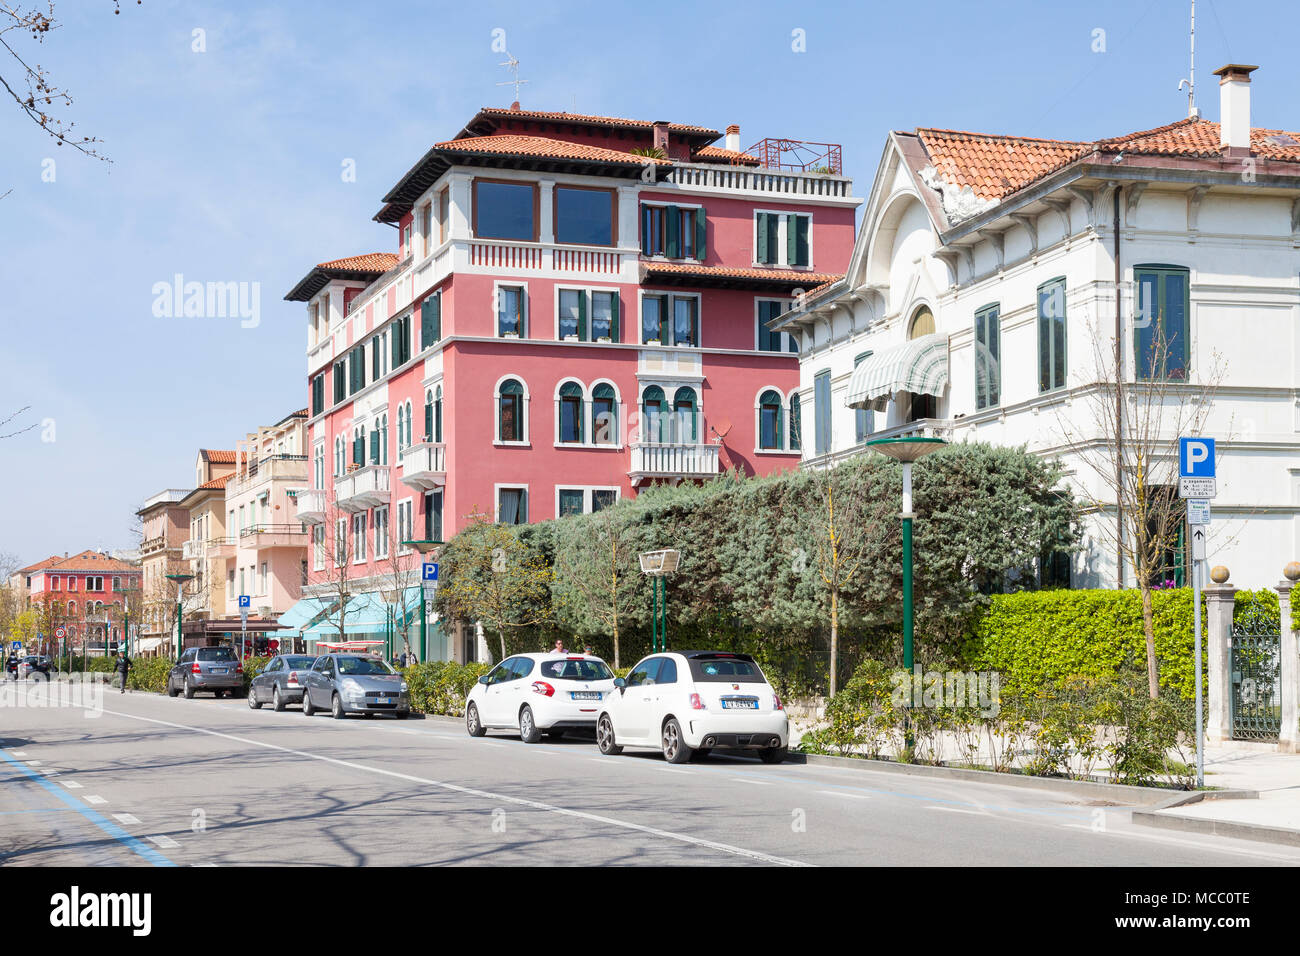 View down Granviale Santa Maria Elisabetta, Lido di Venezia, Venice, Veneto, Italy with its Liberty style architecture Stock Photo